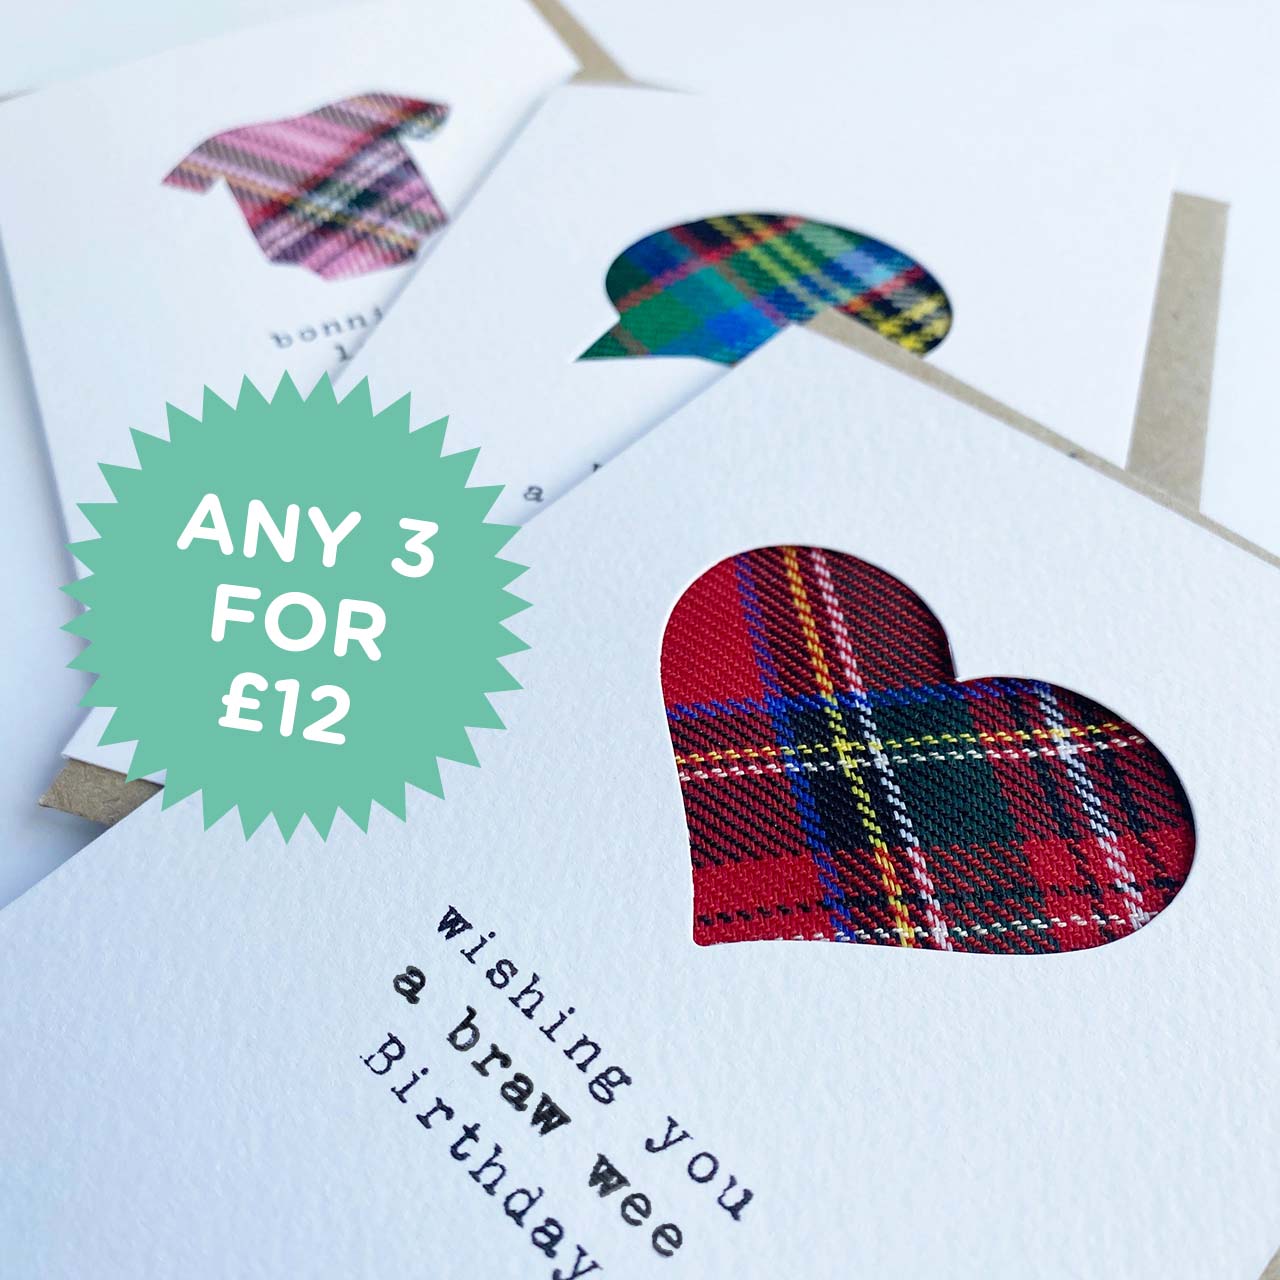 'Bonnie Wee Laddie' Scottish Baby Card with Tartan